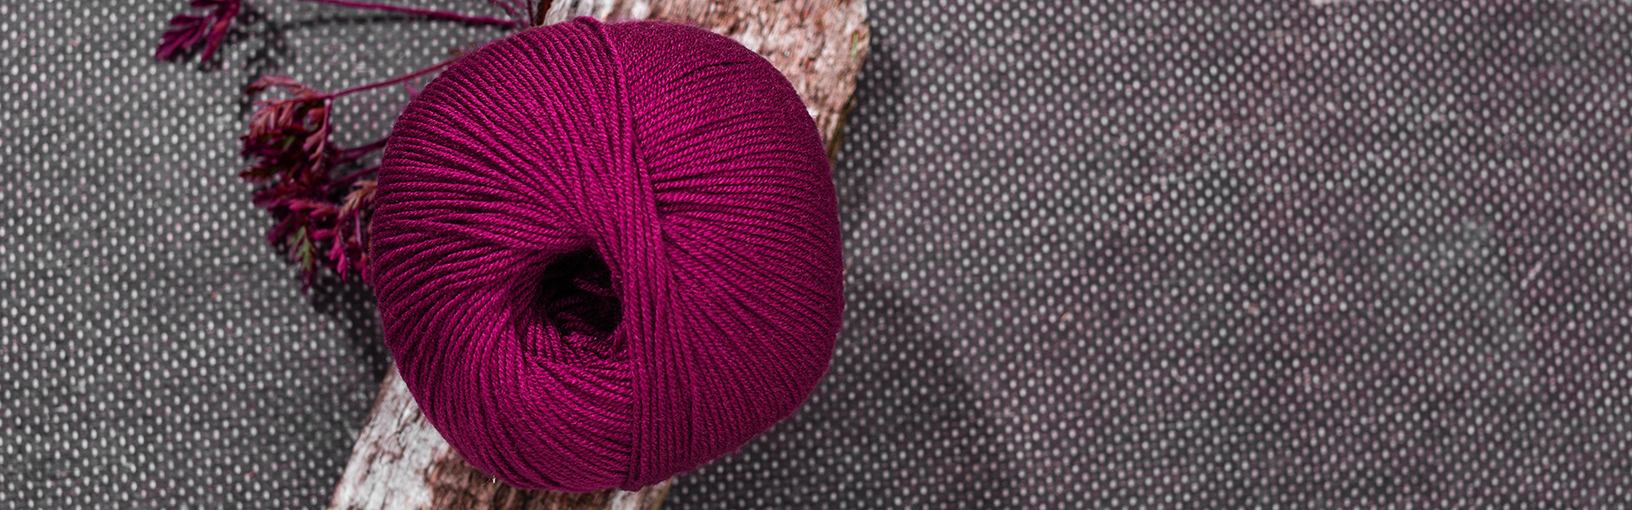 Visokokvalitetne pređe za pletenje, kukičanje i filc Lana Grossa Vune | Hand-dyed